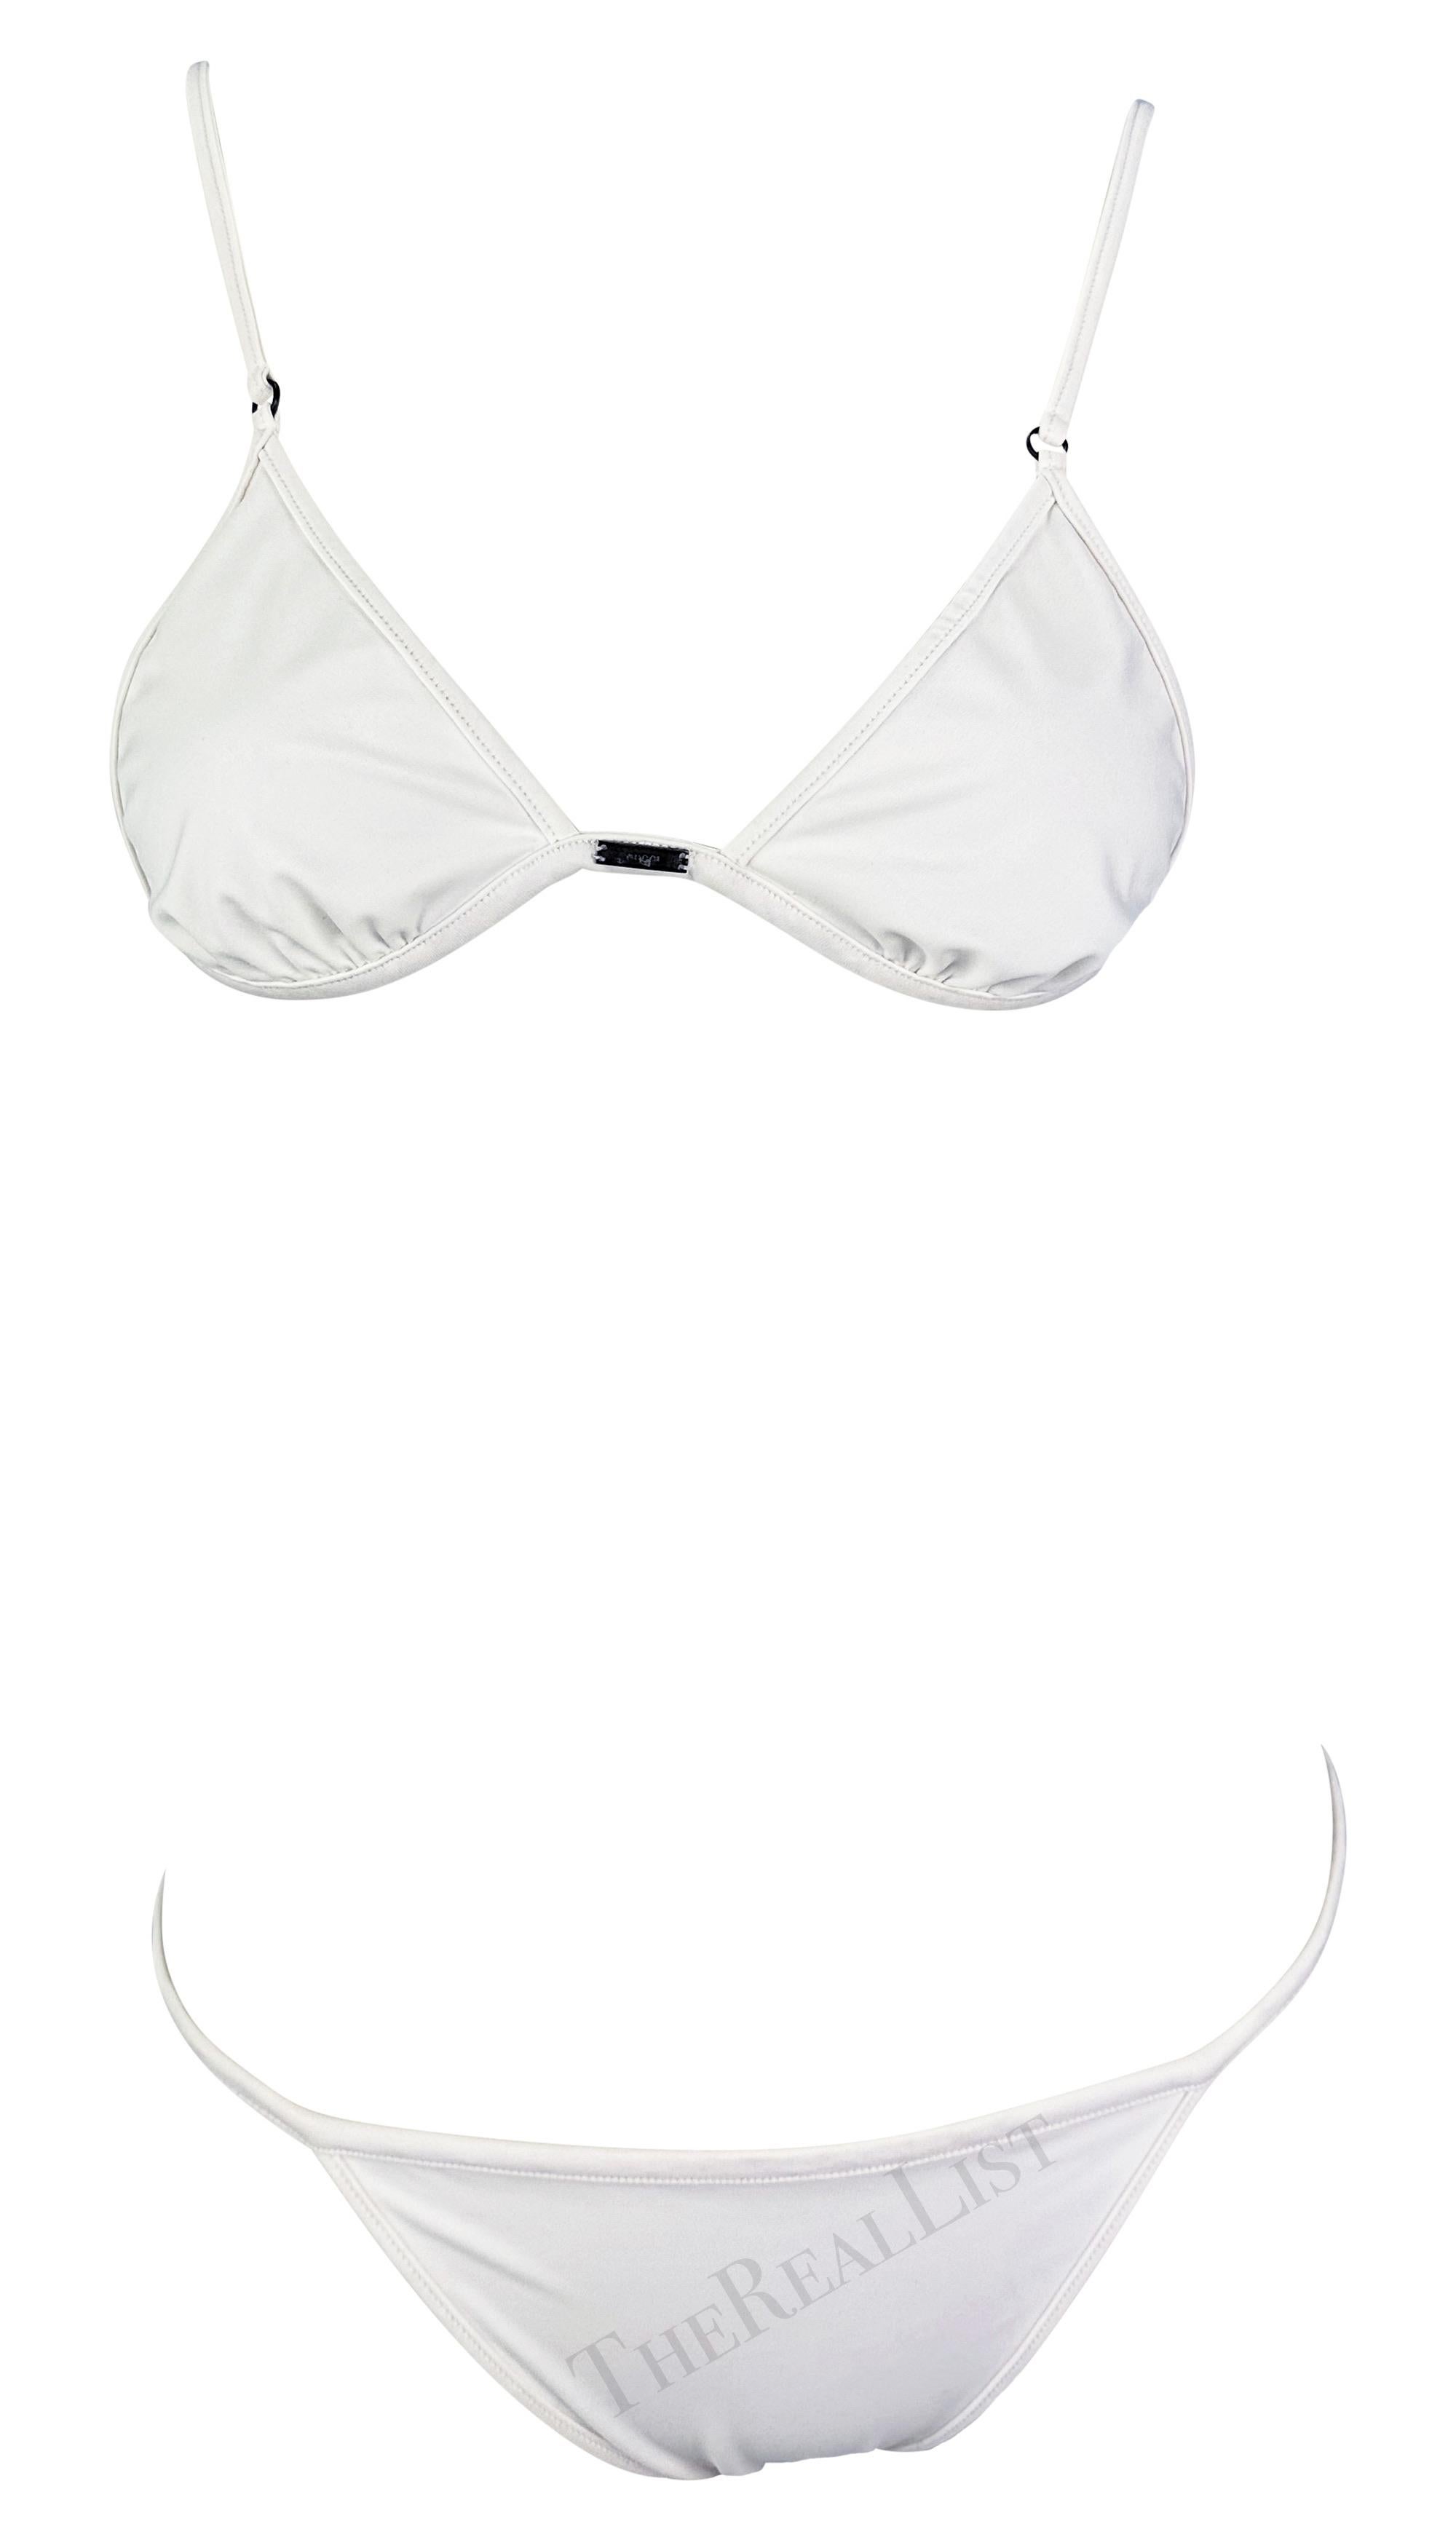 Whiting présente un bikini blanc chic de Gucci, conçu par Tom Ford. Issu de la collection printemps/été 2001, ce maillot de bain deux pièces blanc se compose d'un haut de forme triangulaire et d'un bas à fines ficelles. Le haut comporte une petite